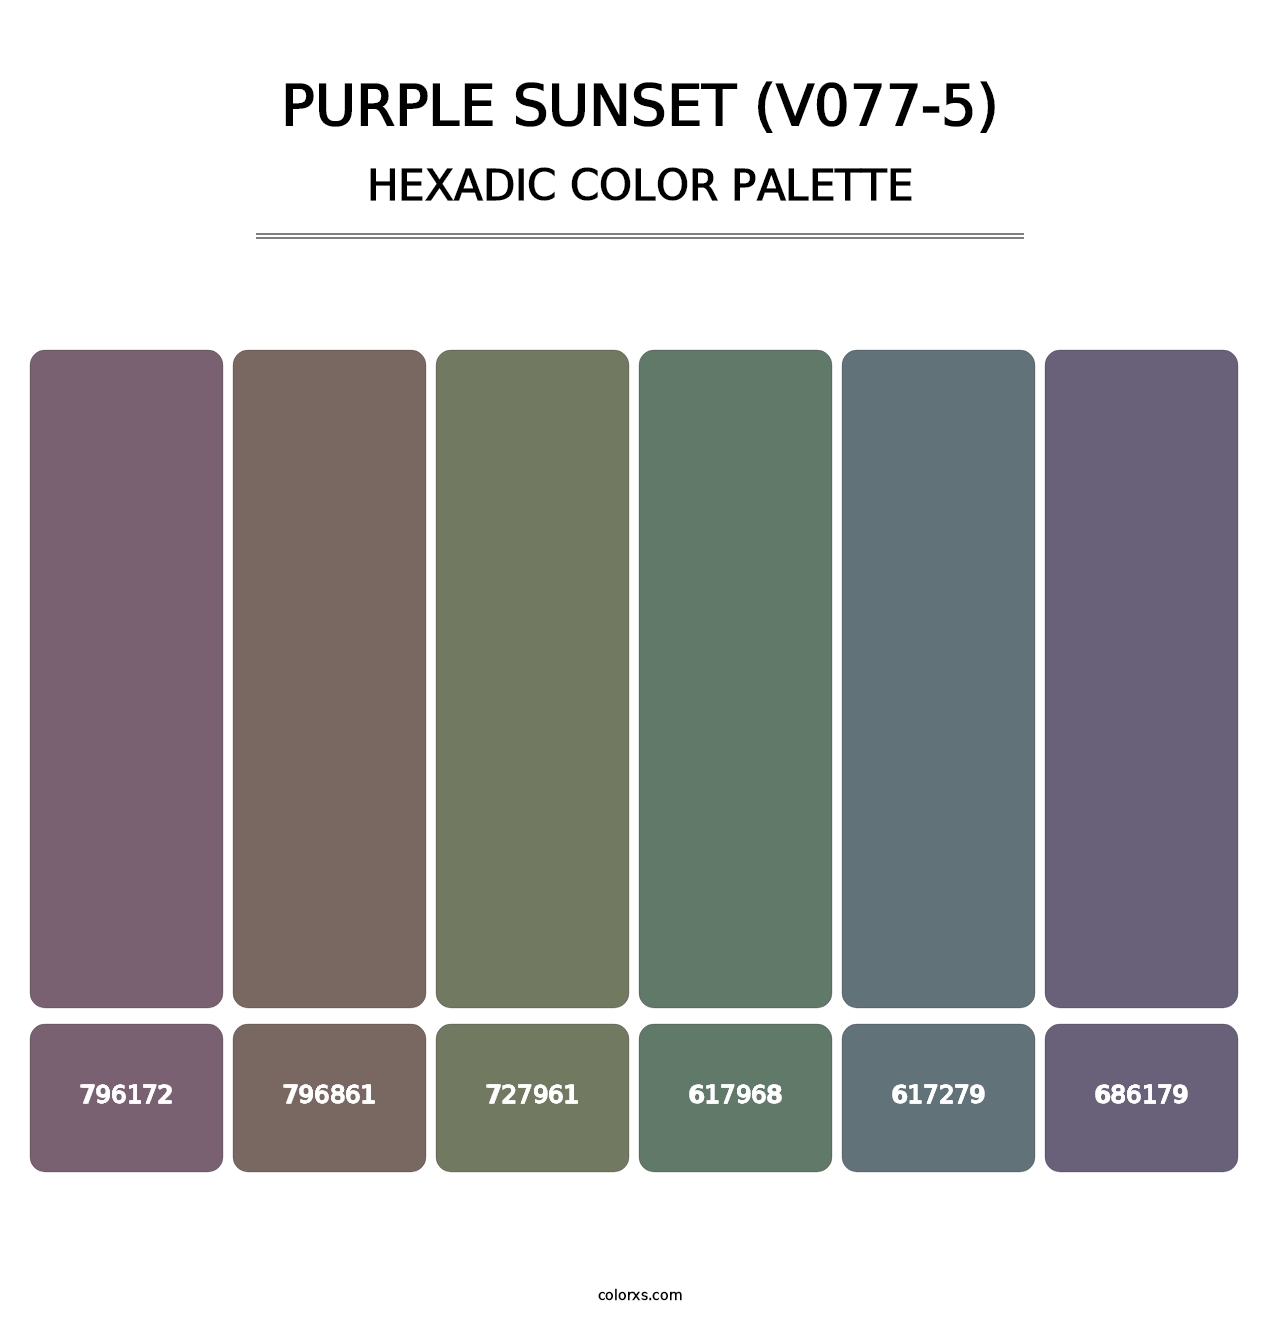 Purple Sunset (V077-5) - Hexadic Color Palette